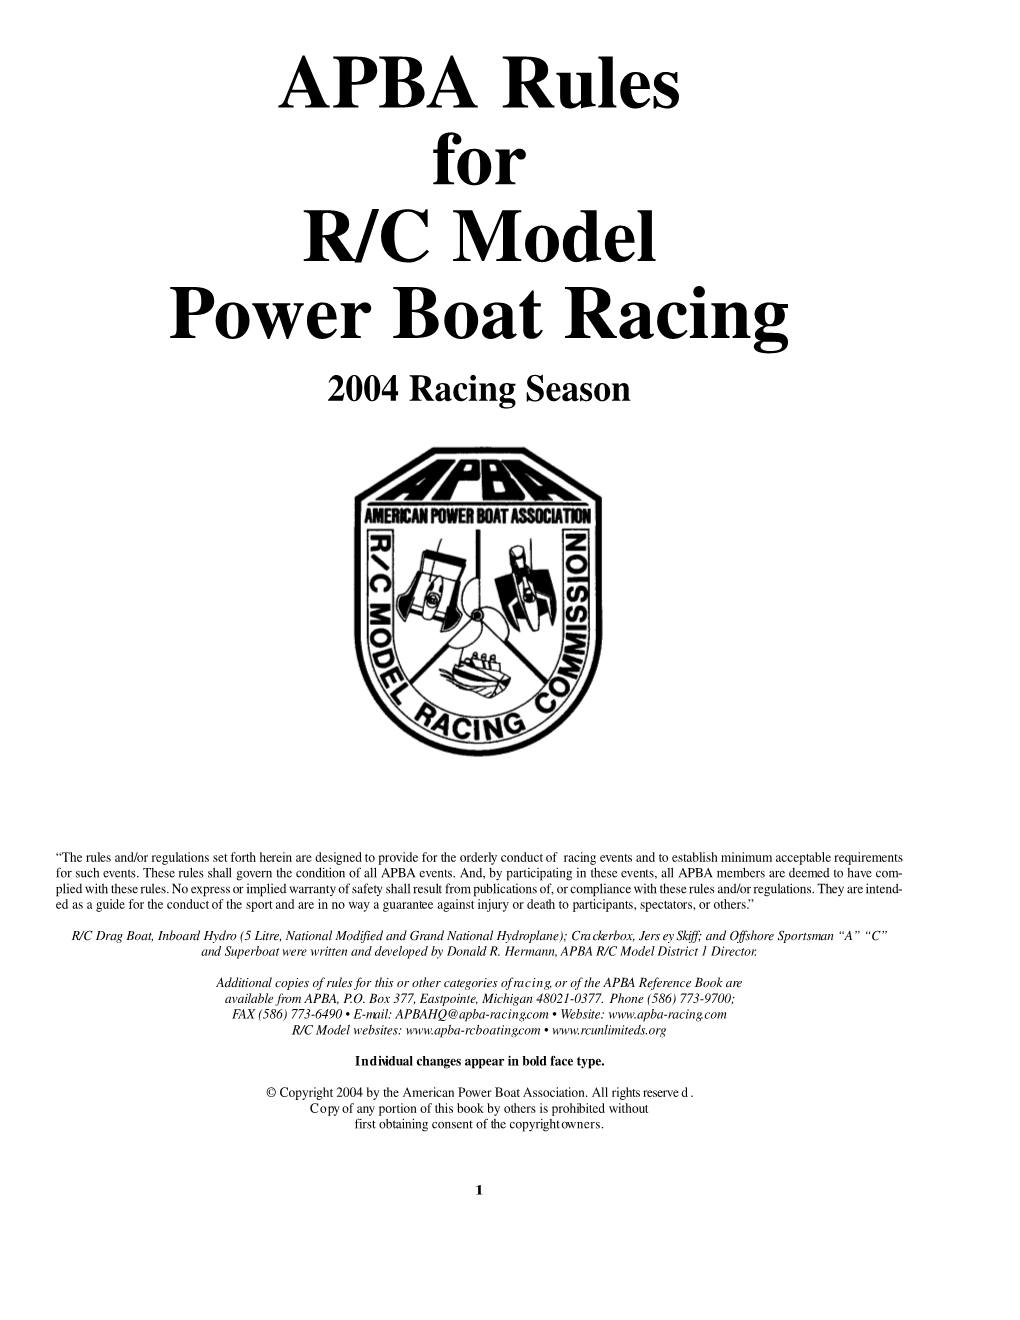 2004 RC Model Rules